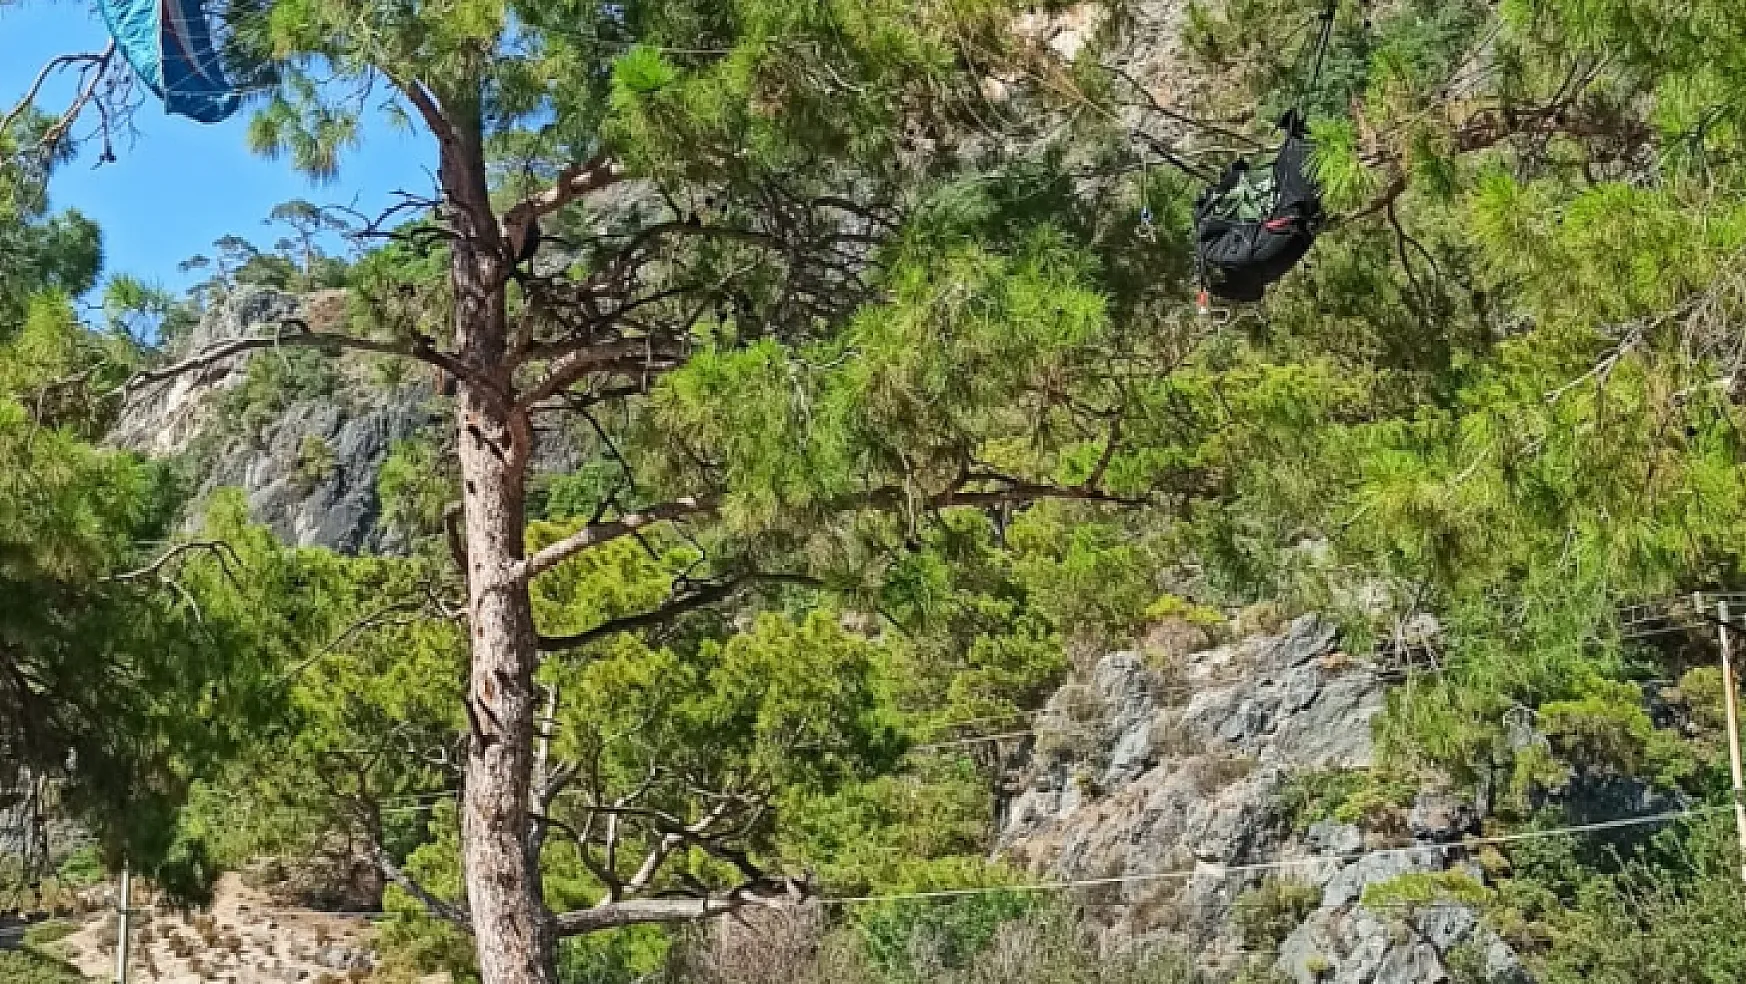 Yamaç paraşütü pilotu ağaçta asılı kaldı